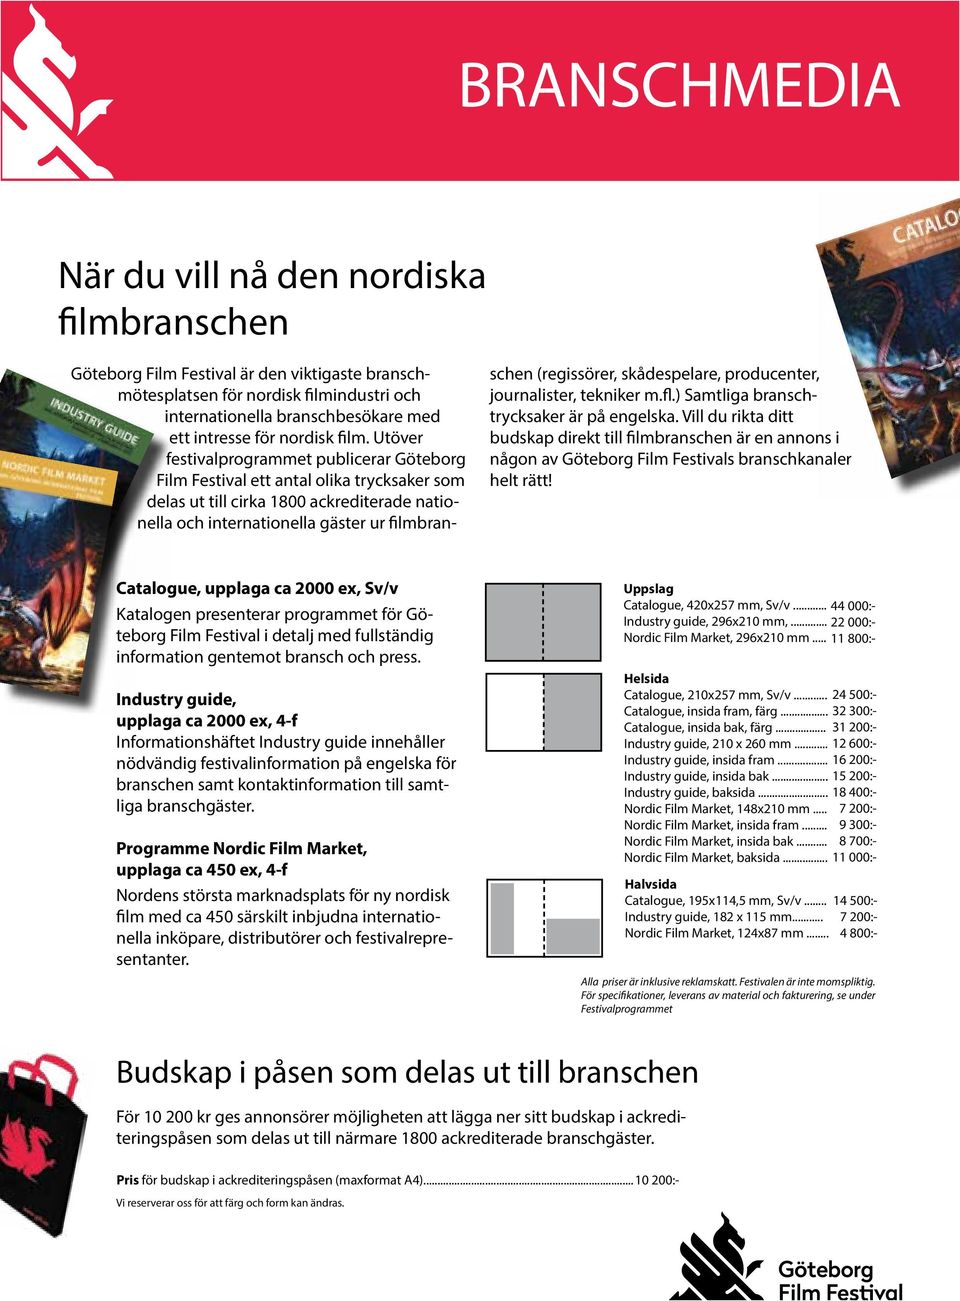 Utöver festivalprogrammet publicerar Göteborg Film Festival ett antal olika trycksaker som delas ut till cirka 1800 ackrediterade nationella och internationella gäster ur filmbranschen (regissörer,